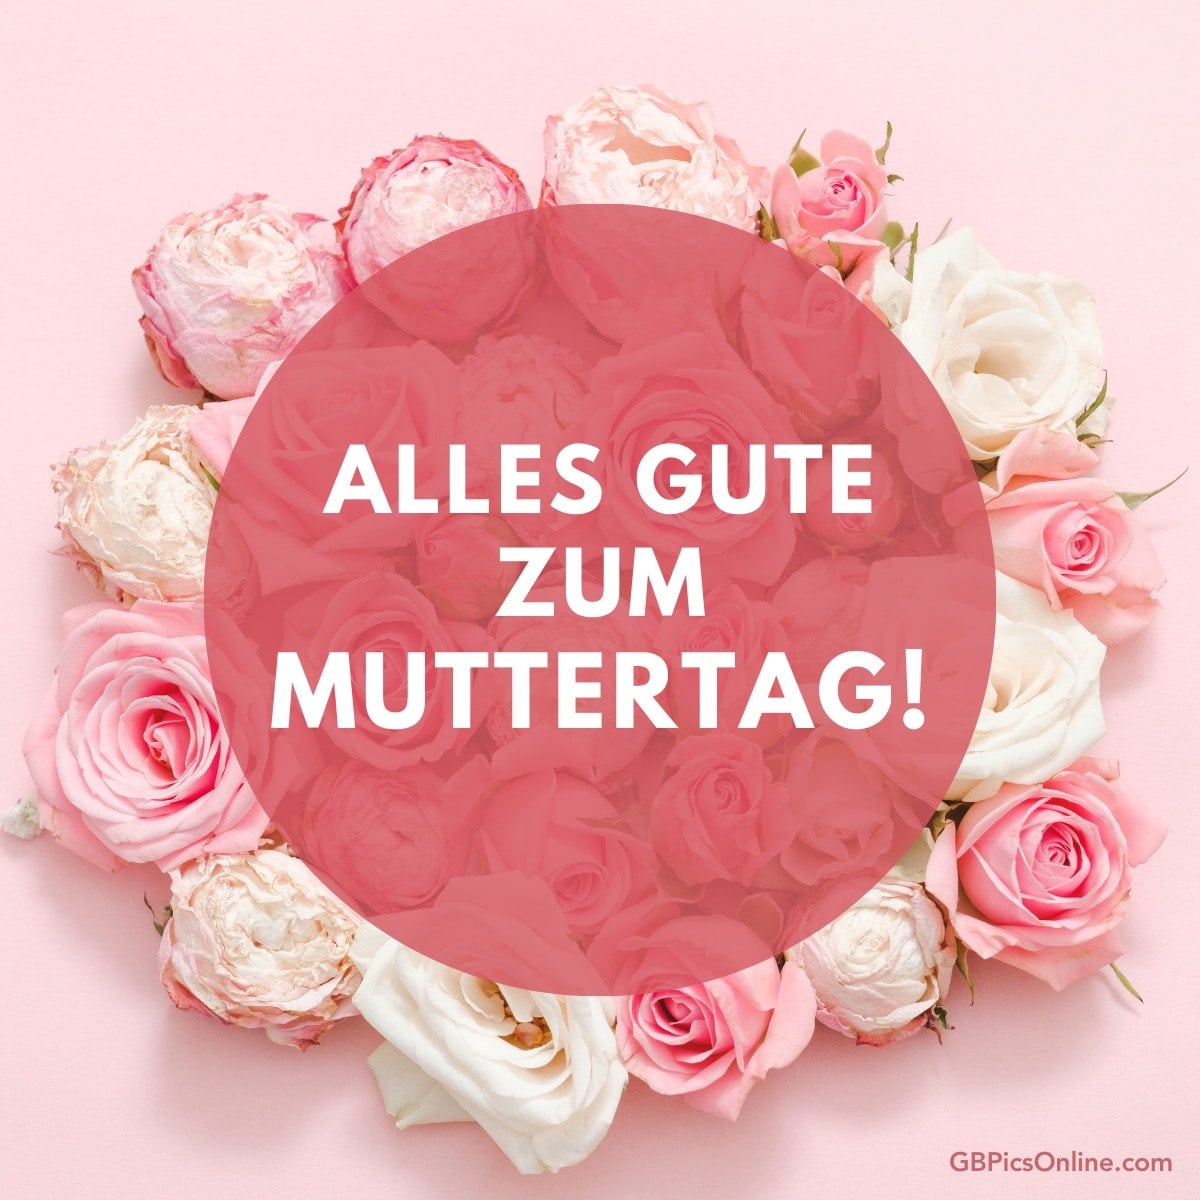 Rosen und Text „Alles Gute zum Muttertag!“ auf rosa Hintergrund